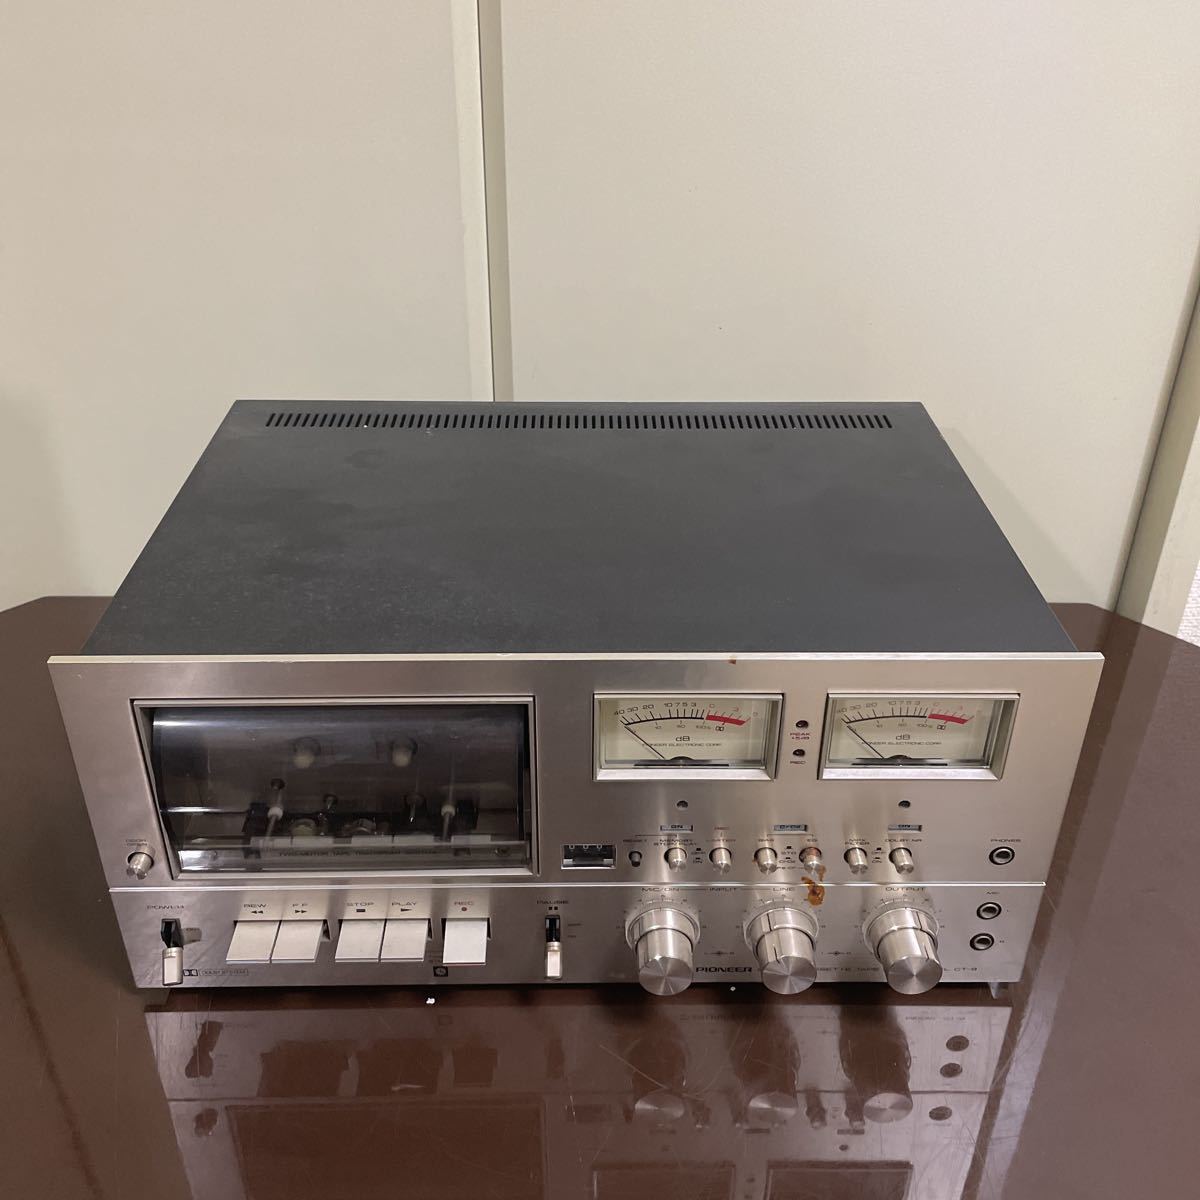 超熱 オーディオ機器 ステレオカセットデッキ Pioneer パイオニア CT-9